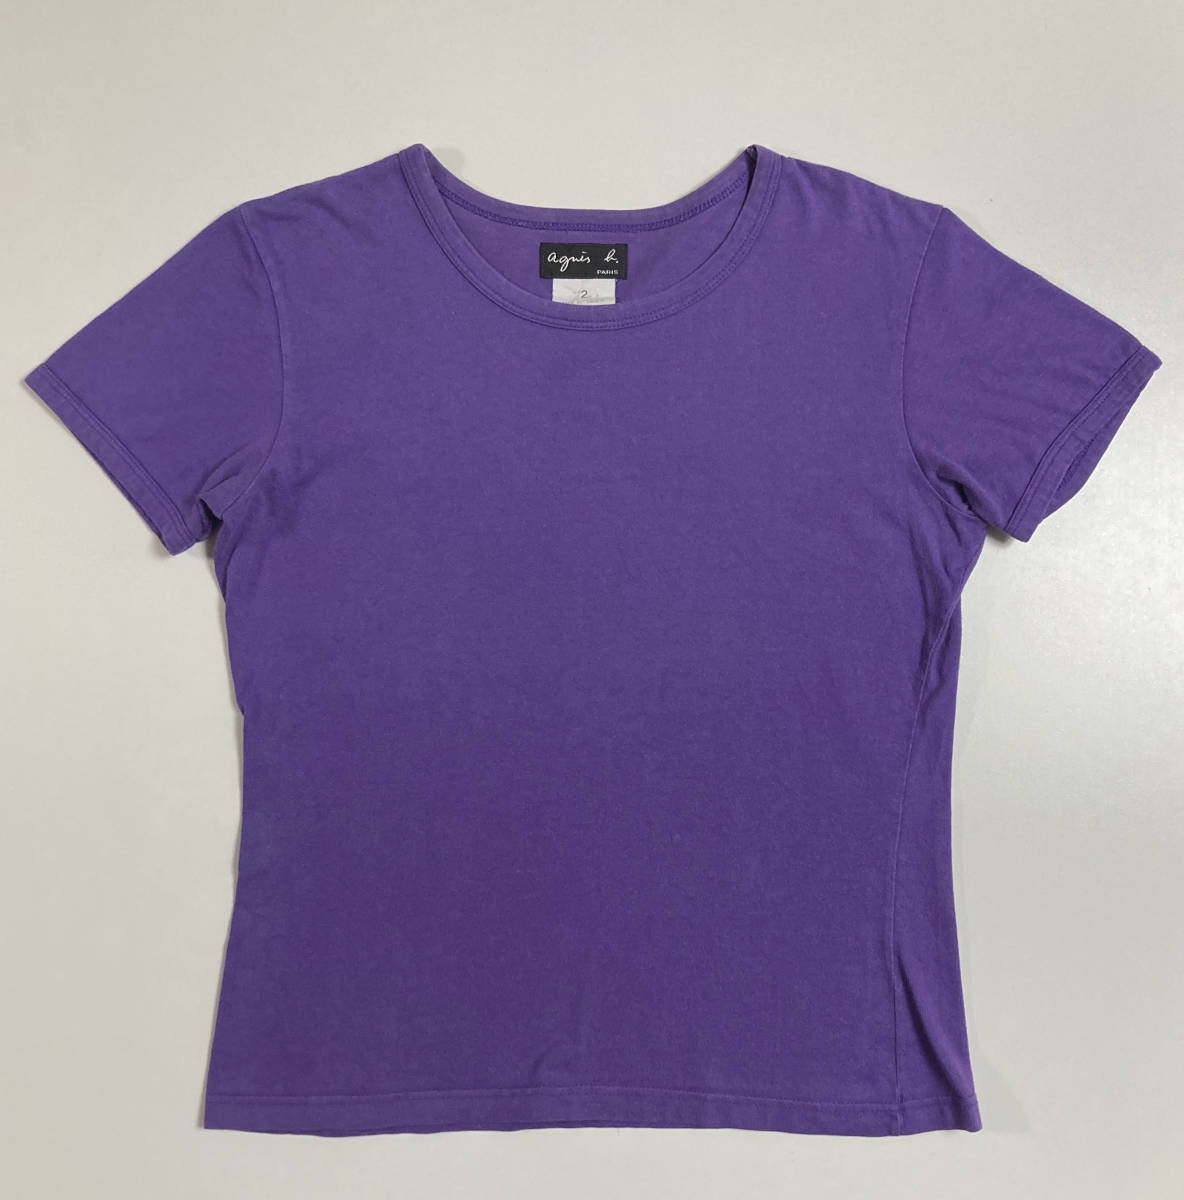 agnes b. フランス製 半袖 カットソー Tシャツ 2 アニエスベー 2 紫 パープル_画像2